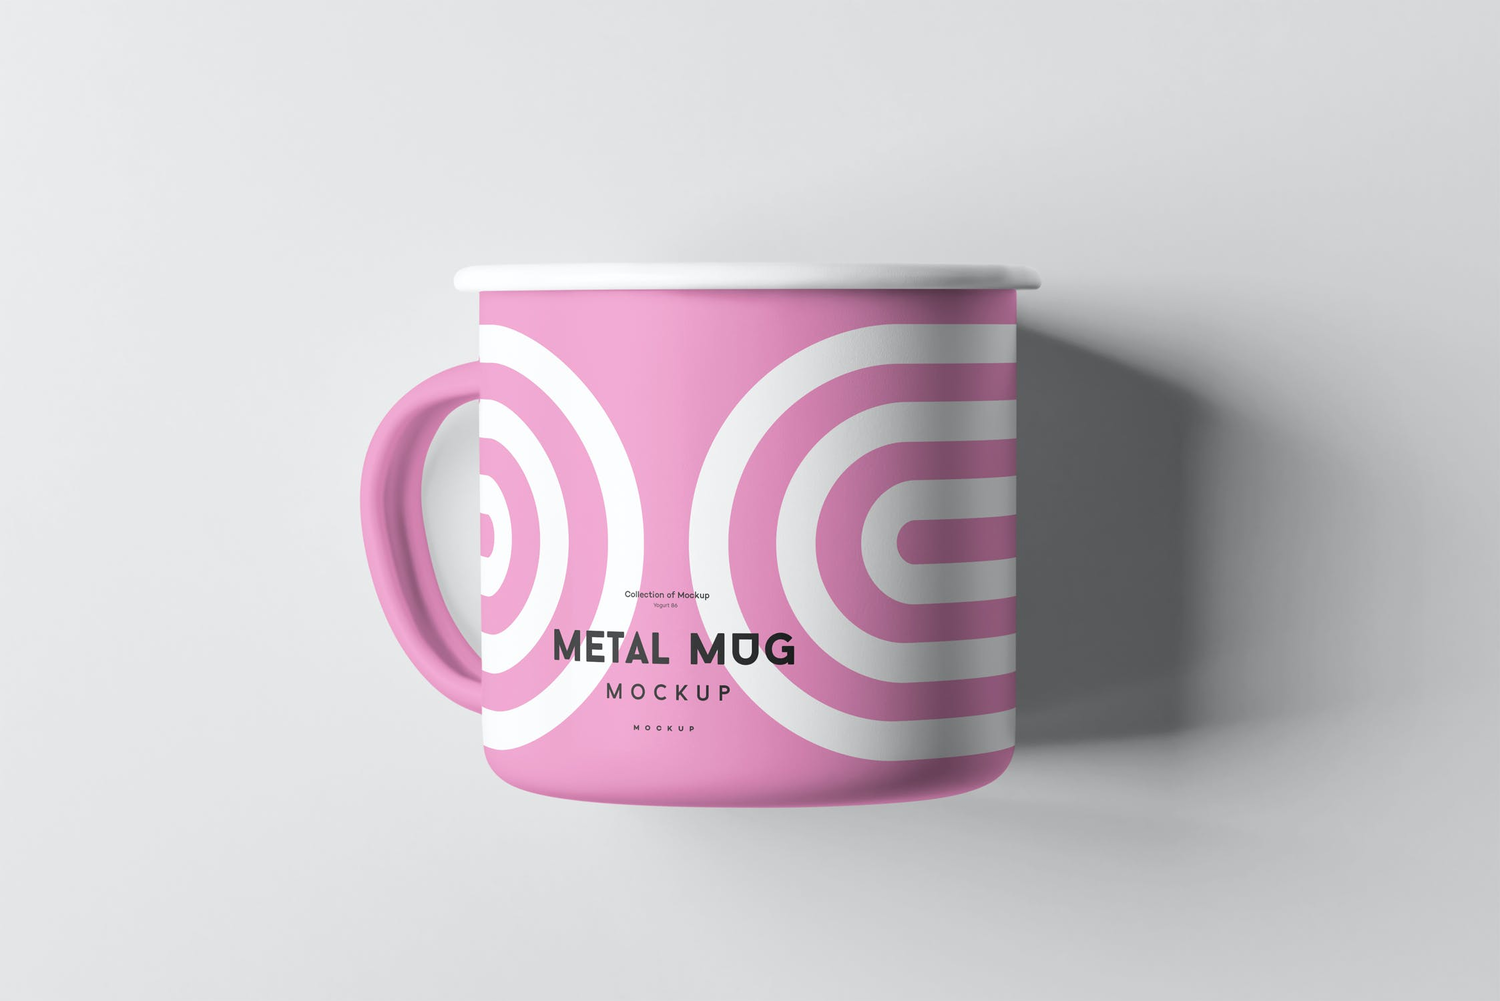 4757 金属搪瓷杯马克杯咖啡杯水杯茶杯贴图ps包装样机素材设计模板 Metal Mug Mock-up@GOOODME.COM